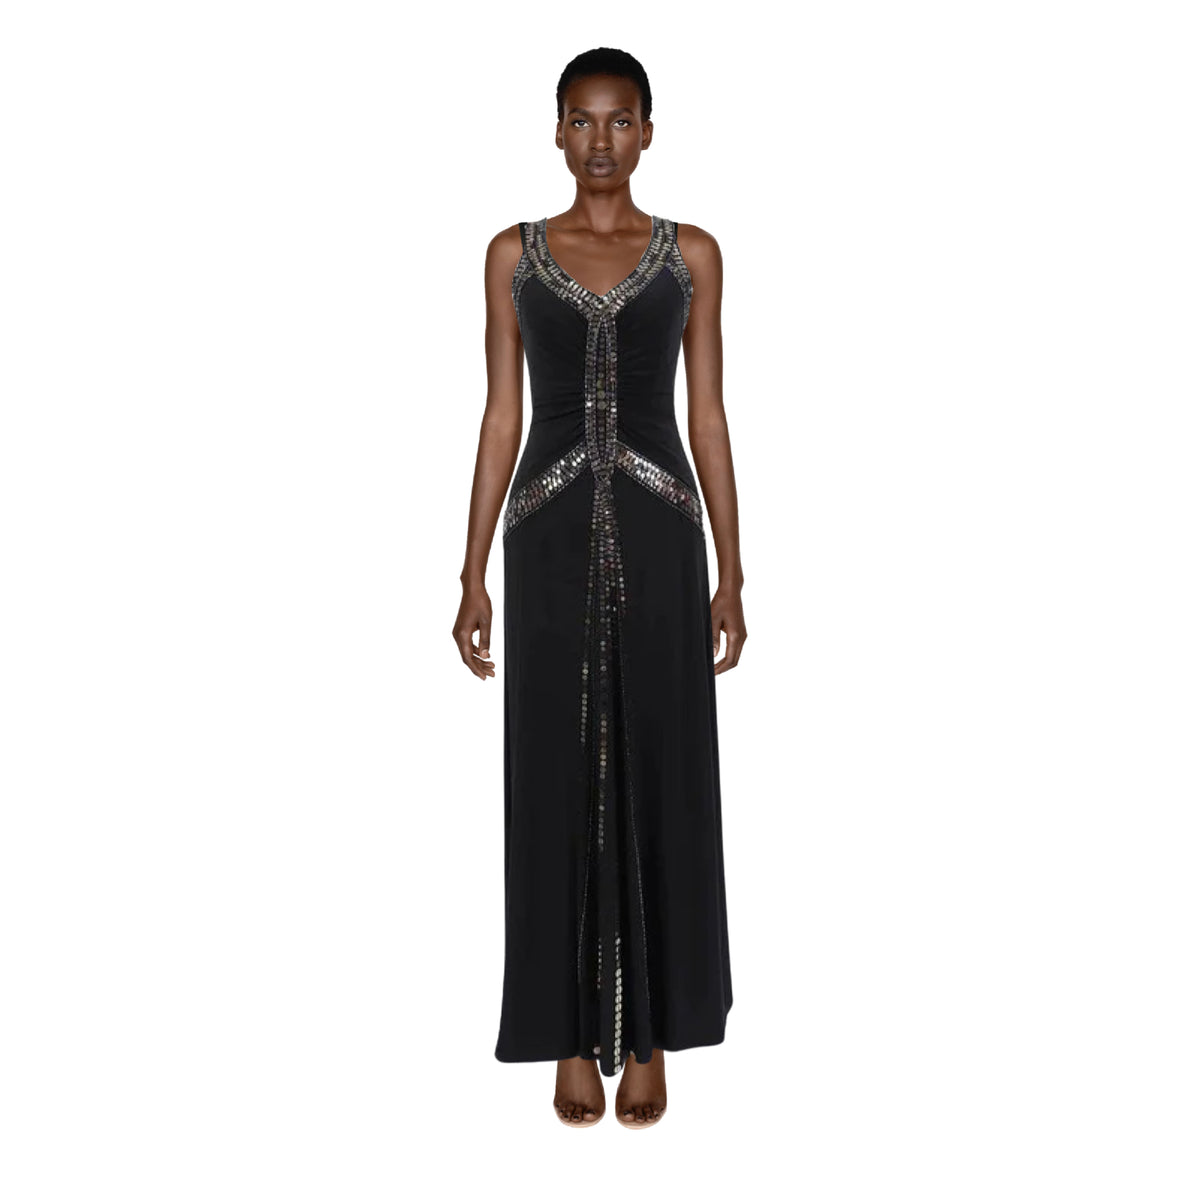 SUE WONG Black Sequin Halter Dress | Size S/M